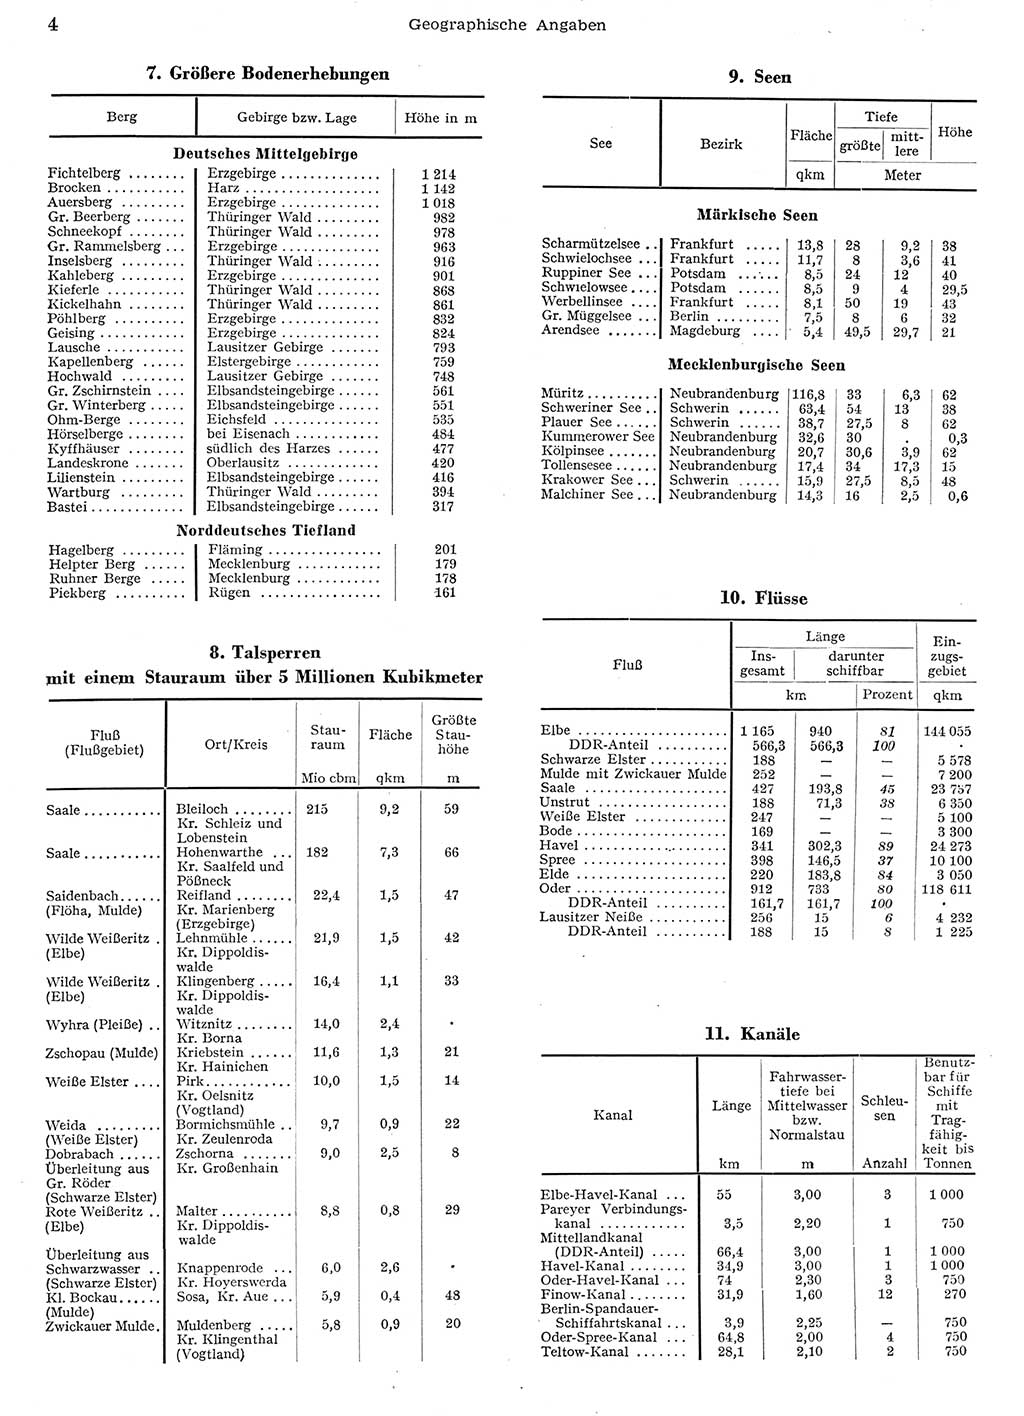 Statistisches Jahrbuch der Deutschen Demokratischen Republik (DDR) 1956, Seite 4 (Stat. Jb. DDR 1956, S. 4)